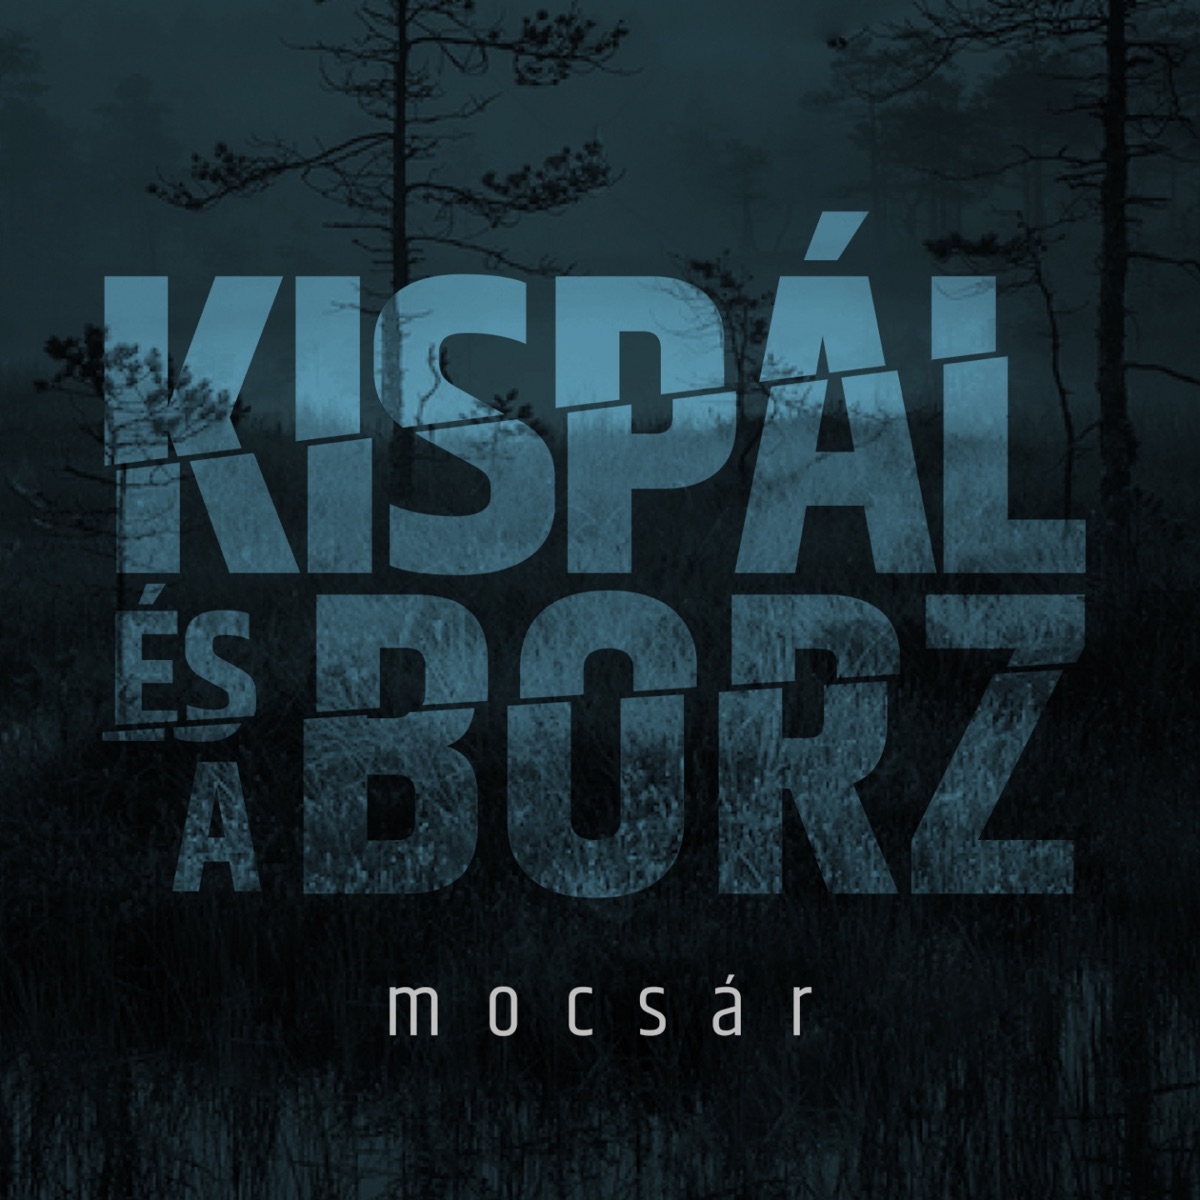 Bálnák, Ki A Partra by Kispál és a Borz on Apple Music